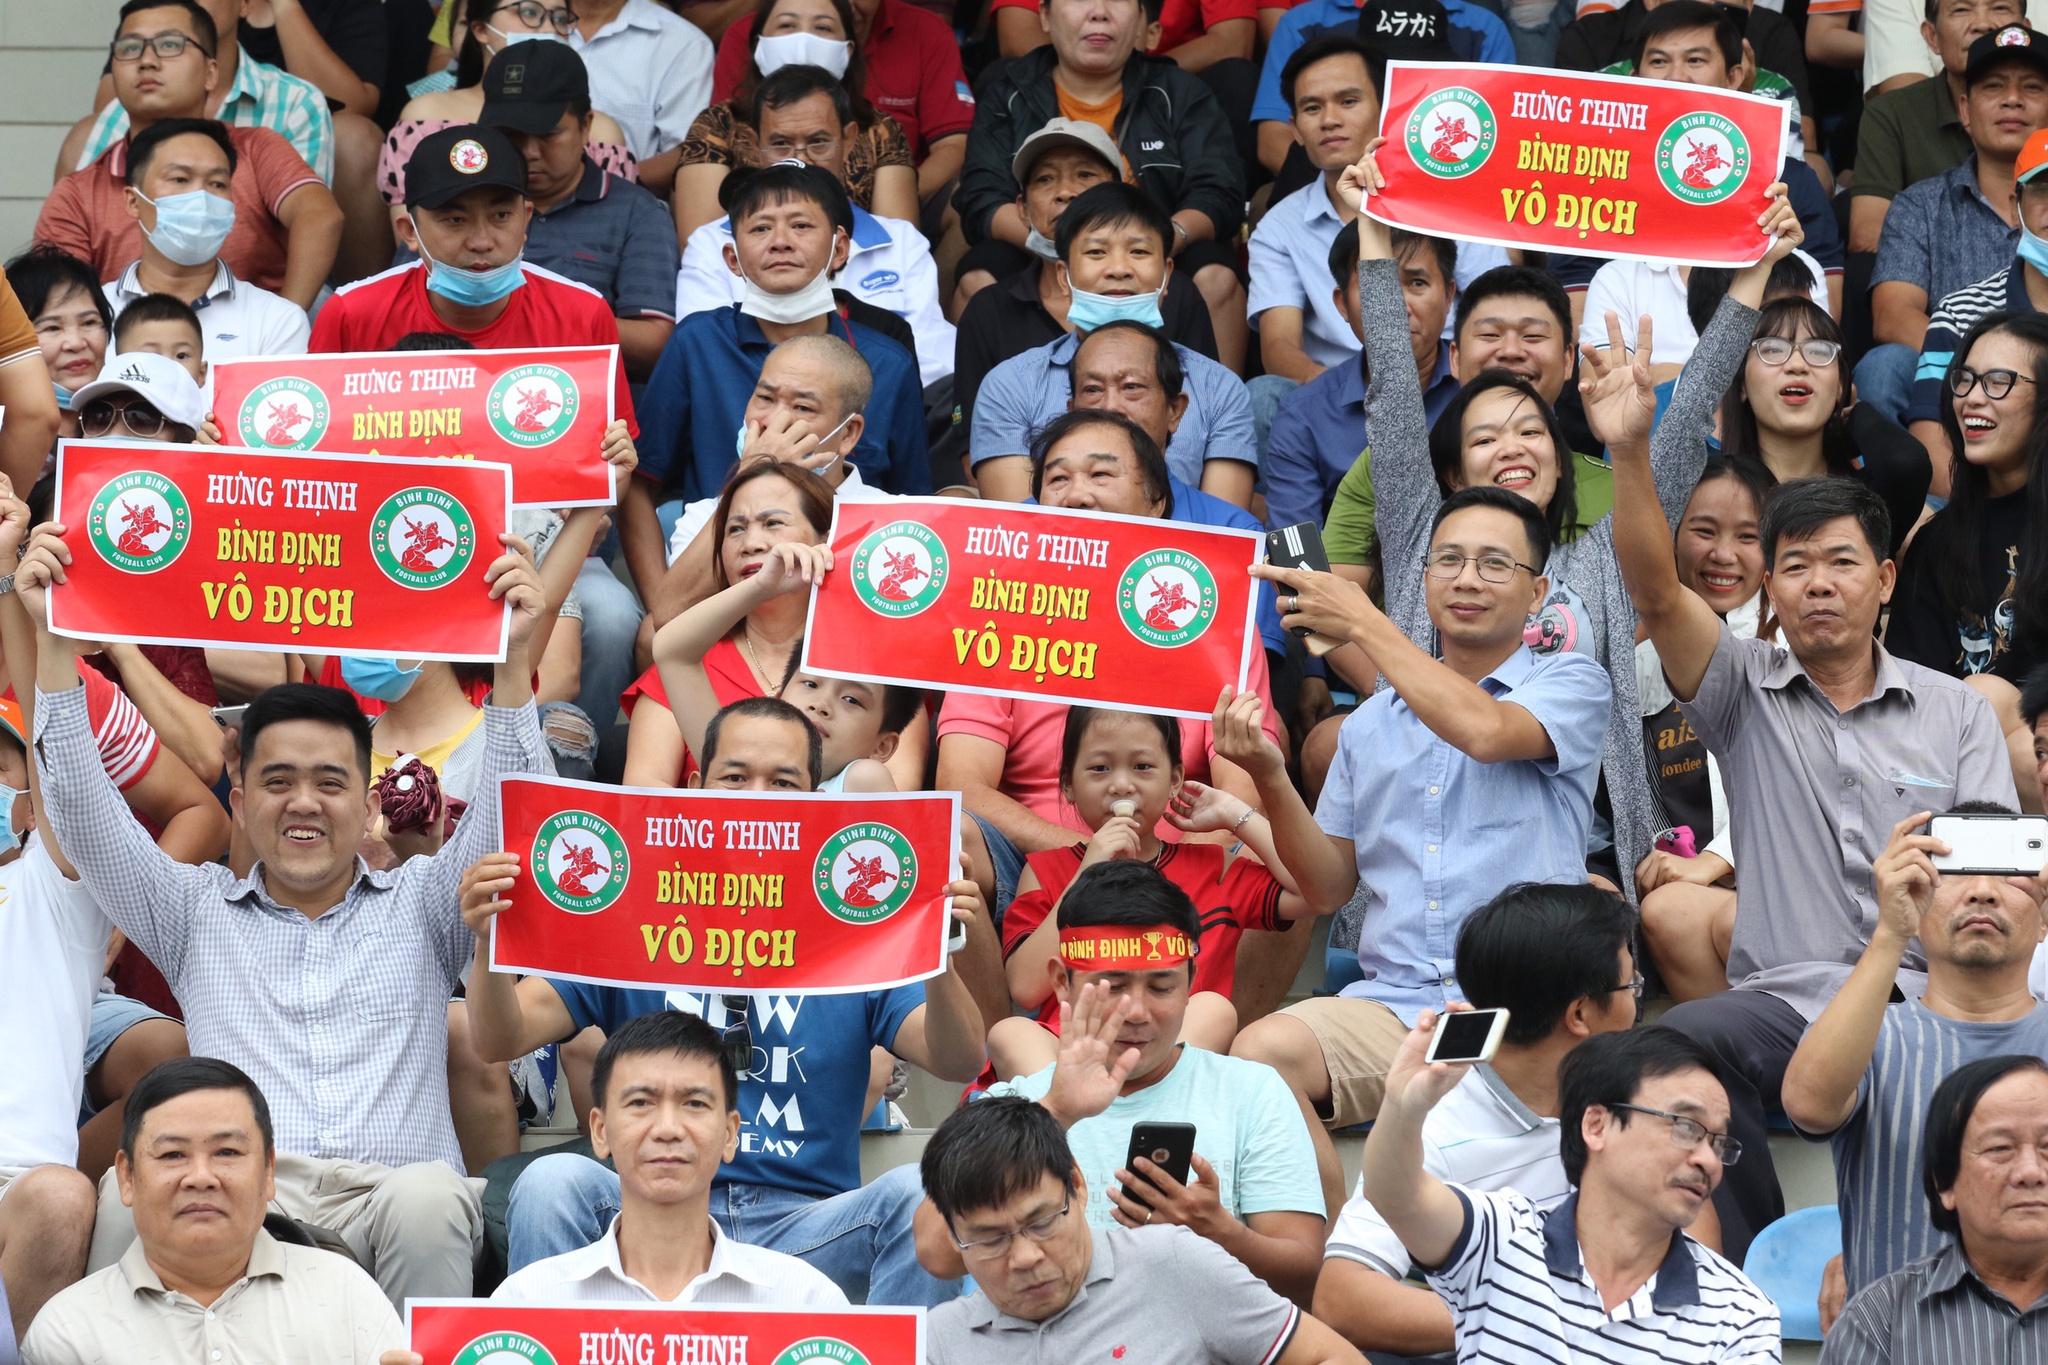 Kết quả suất lên hạng V-League: Chúc mừng CLB Bình Định, tiếc cho Bà Rịa - Vũng Tàu! - ảnh 6